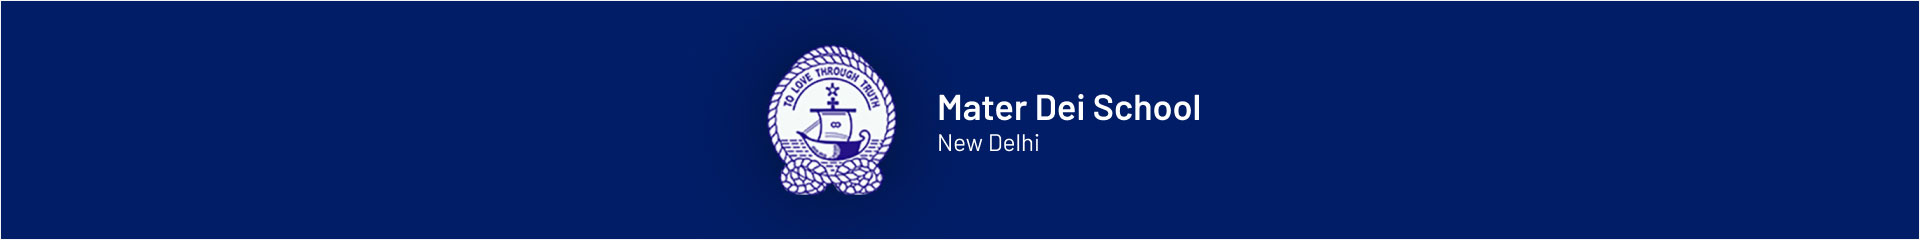 Mater Dei School  New Delhi